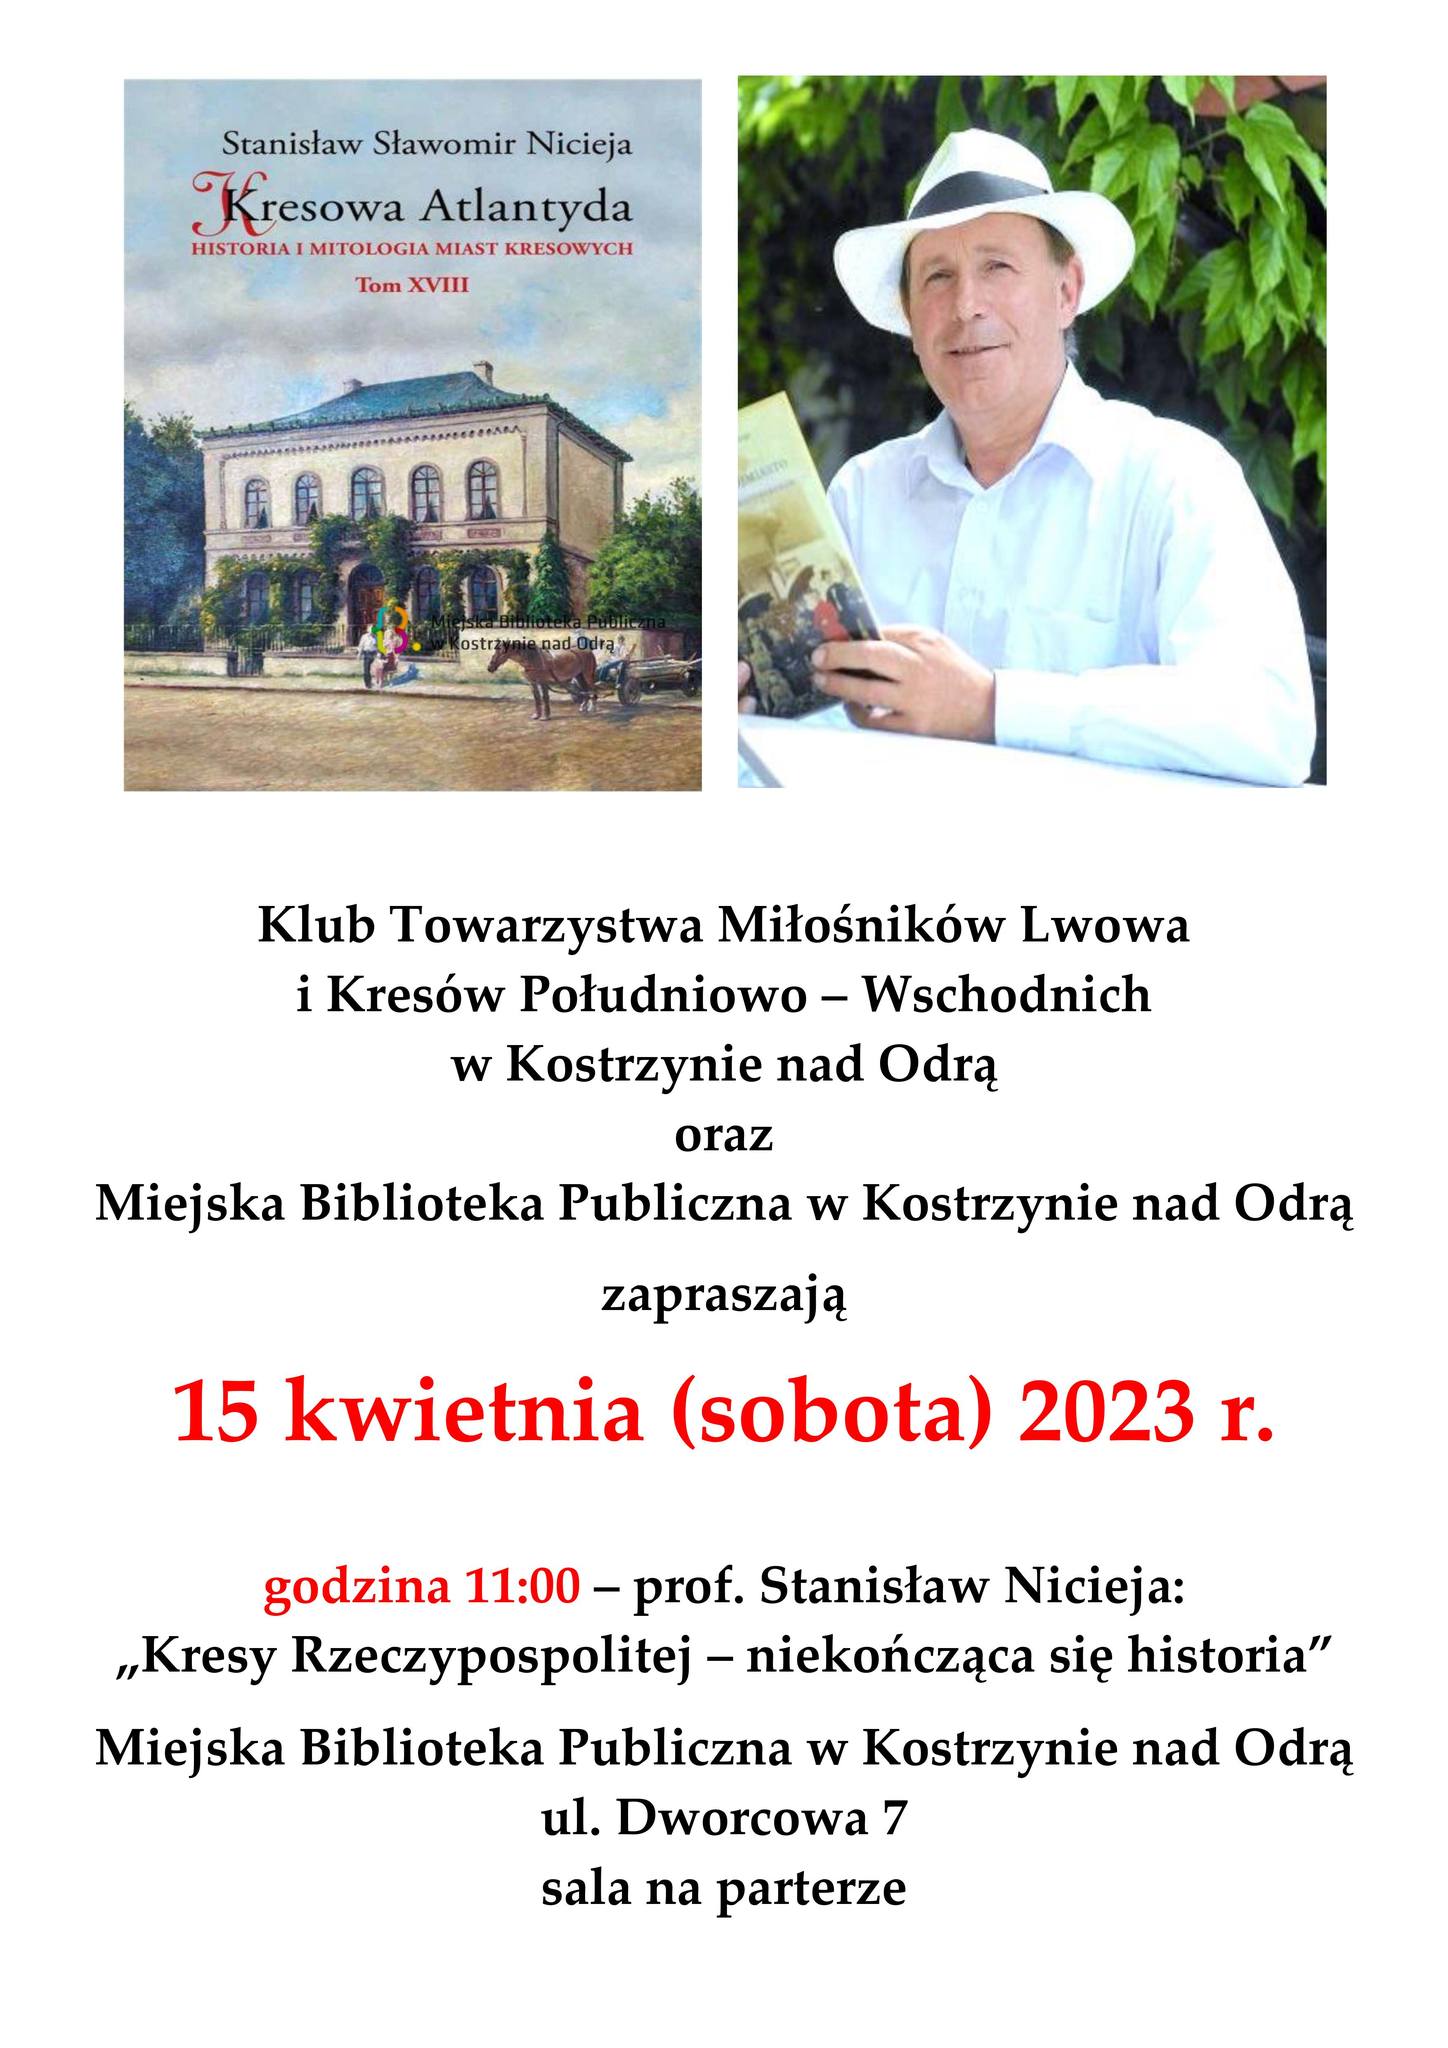 Plakat informacyjny - wykład Prof. Stanisława Niciei w Miejskiej Bibliotece Publicznej w Kostrzynie nad Odrą